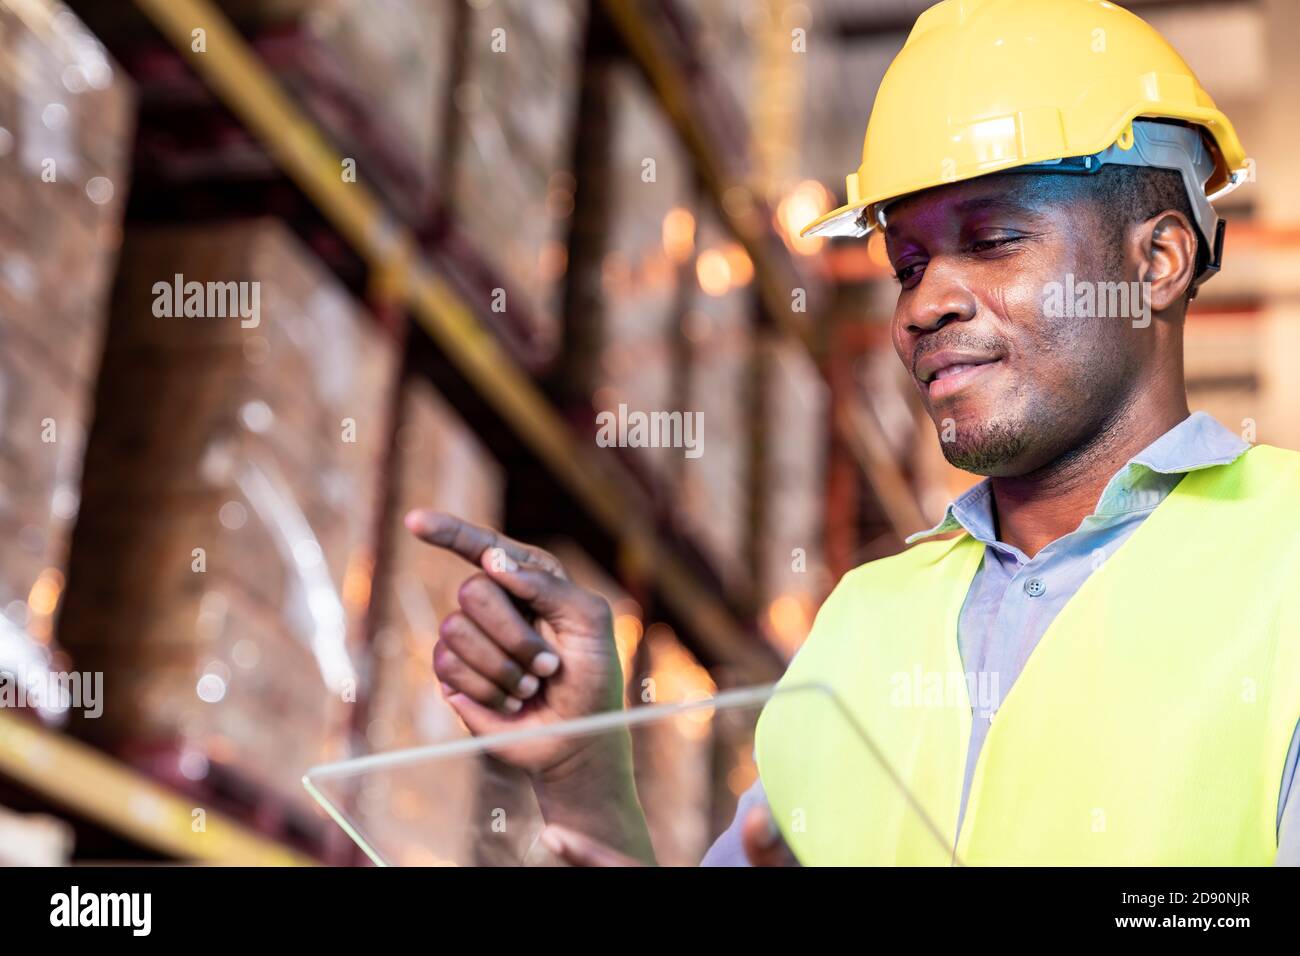 Portrait des afrikanischen schwarzen Lagerarbeiters Halten Sie Tablet und berühren Sie auf dem virtuellen Bildschirm vor ihm in großen Lagerverteilungs-Umgebung. Verwenden Stockfoto